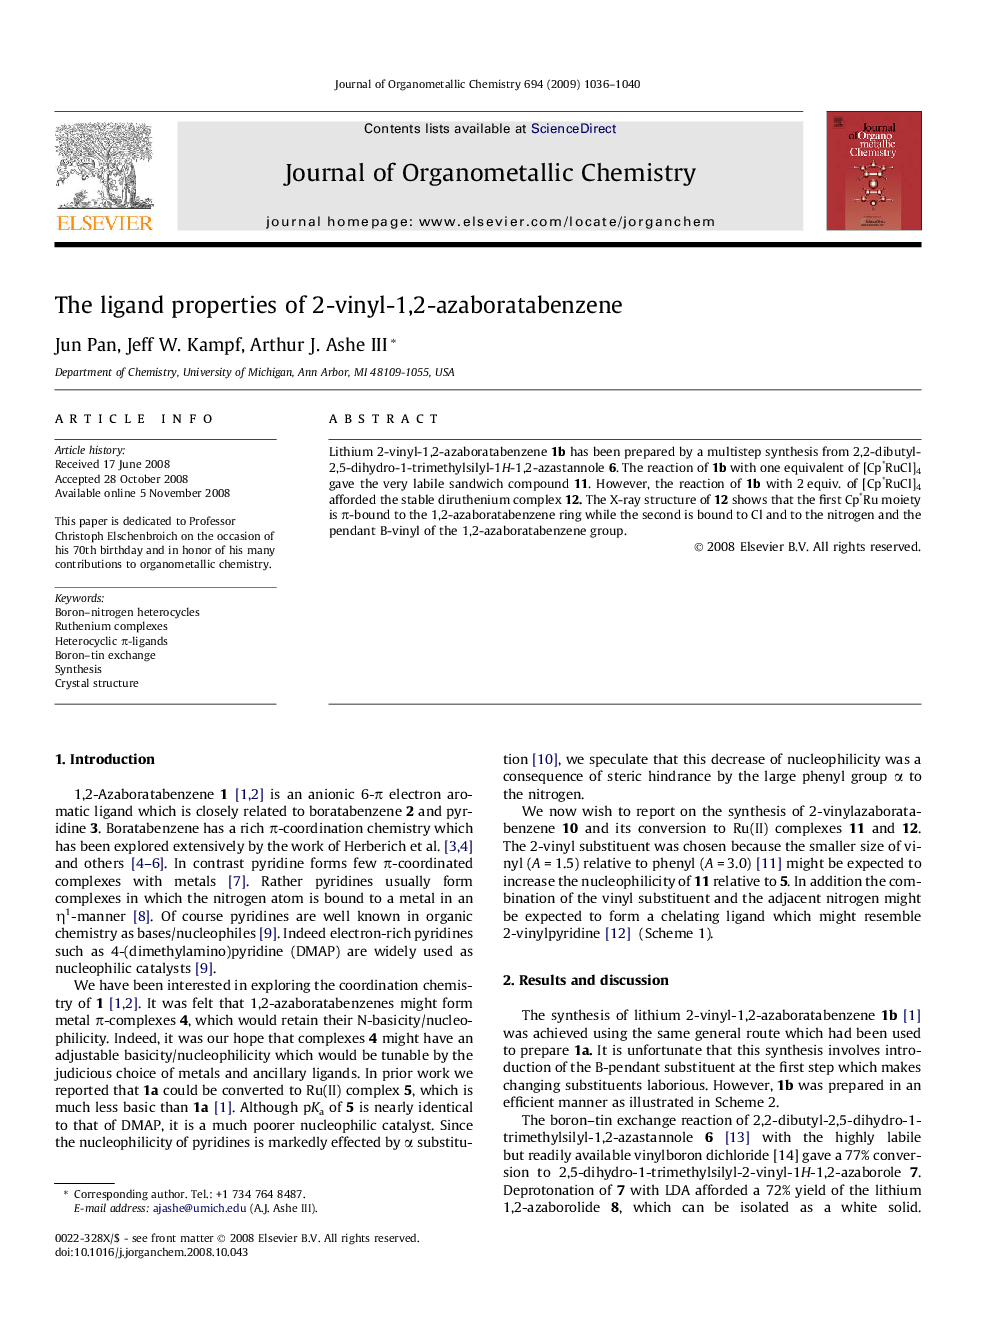 The ligand properties of 2-vinyl-1,2-azaboratabenzene